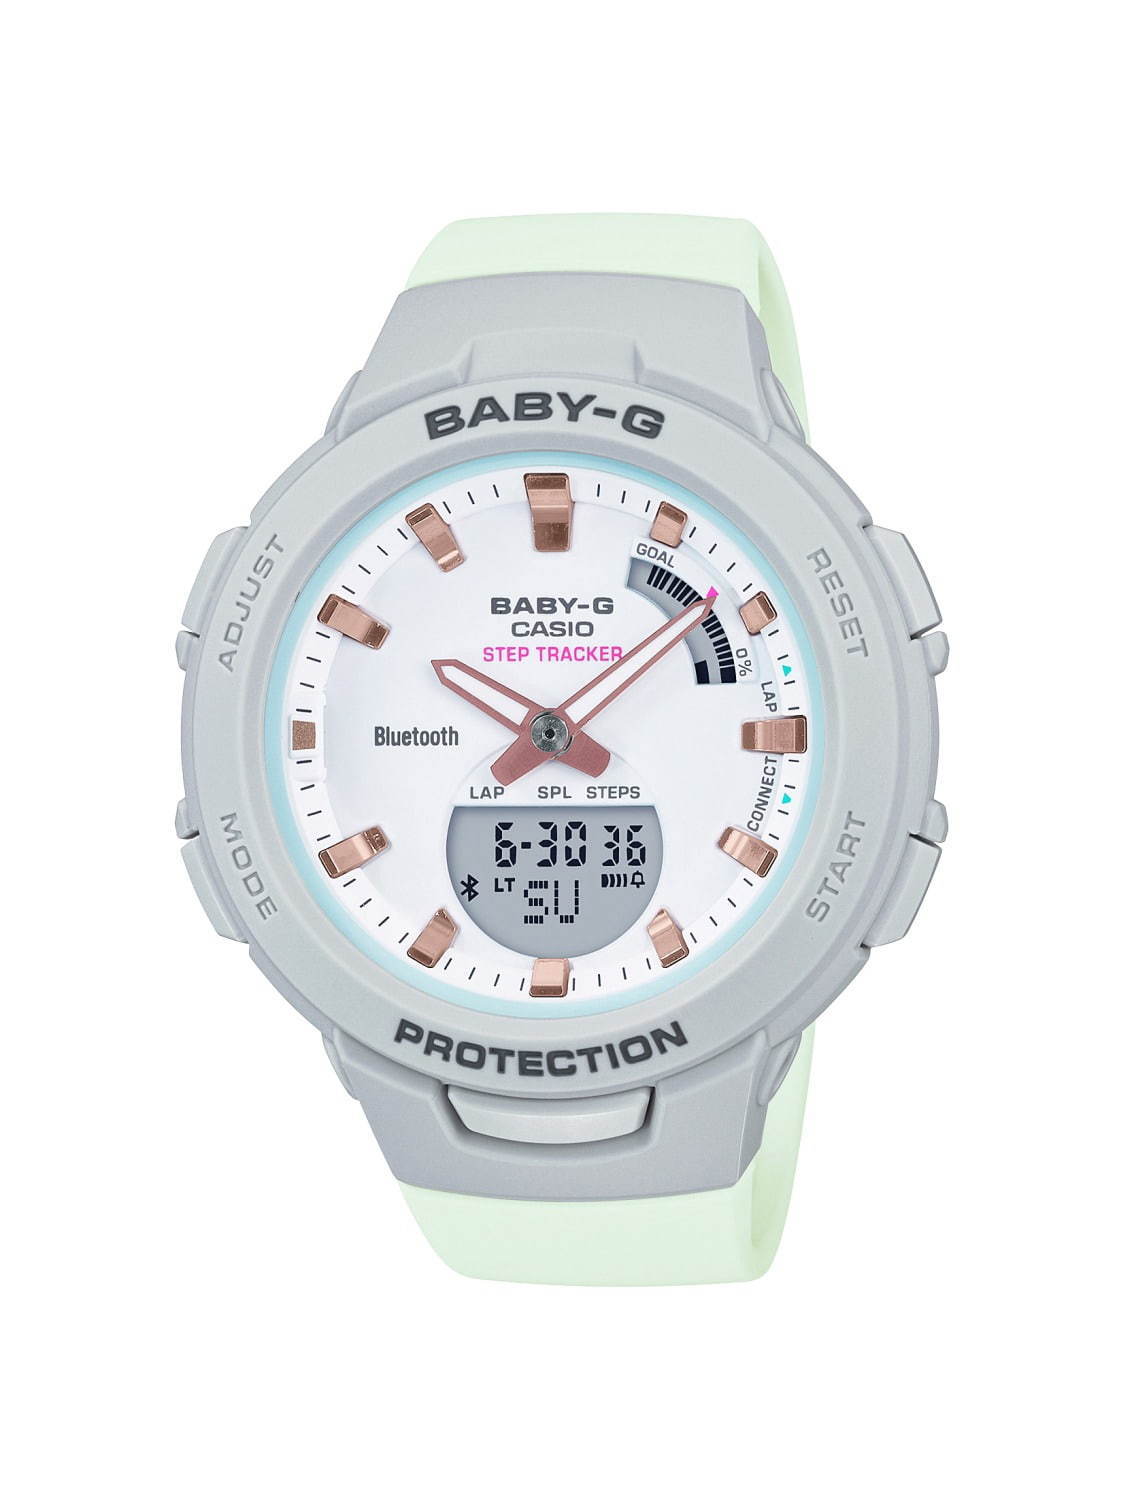 BABY-G“スポーツシーン”に特化した新作腕時計、スマホ連携で歩数計測や消費カロリー管理｜写真5